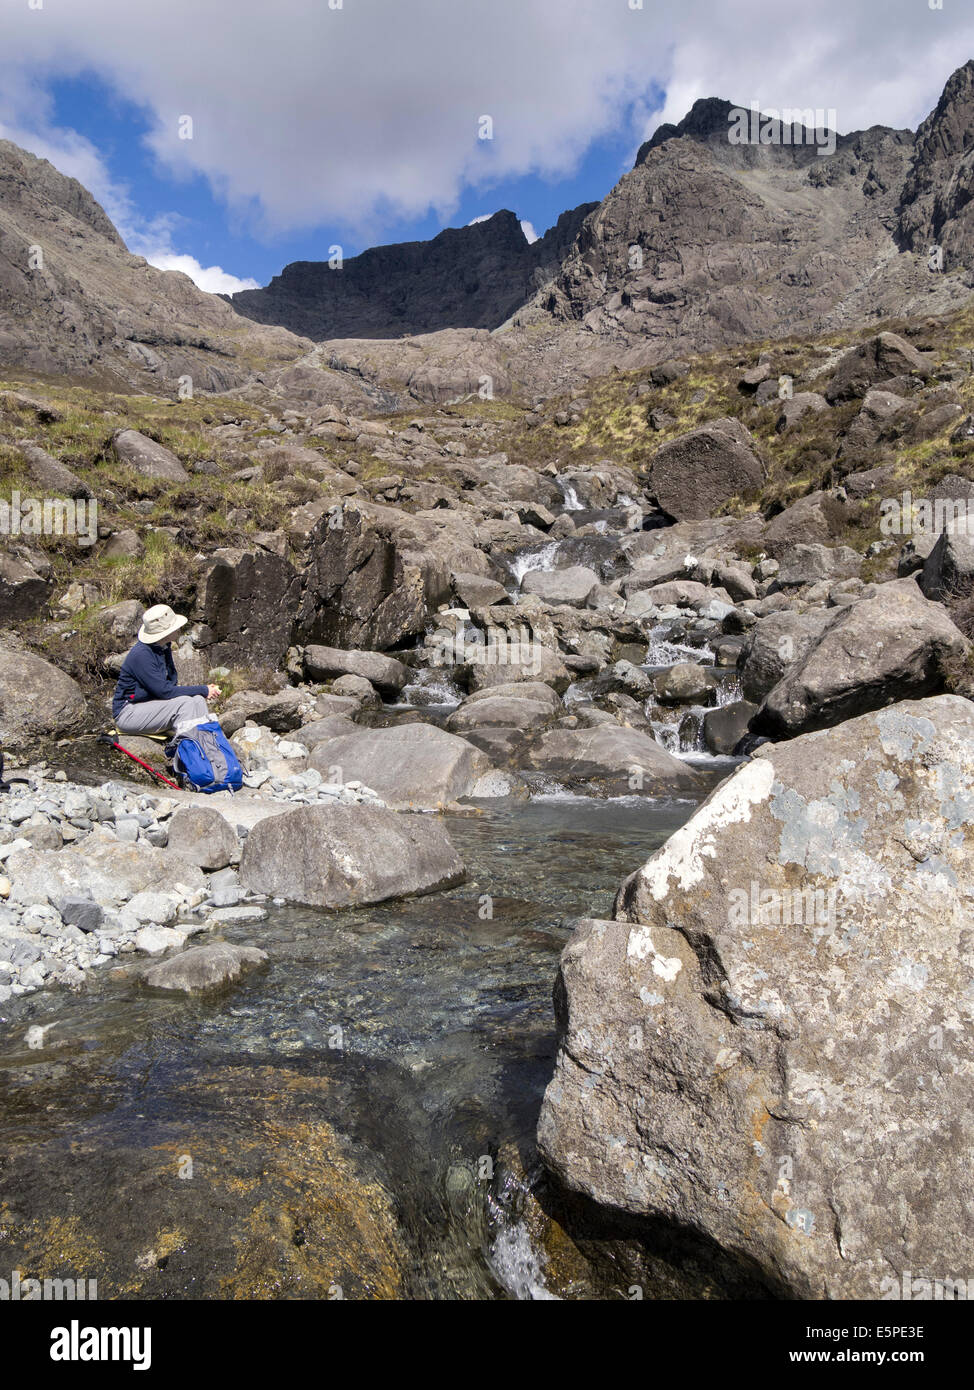 Frau sitzt von Tumbling Stream von Allt Coire Lagan mit Black Cuillin Berge, Glenbrittle, Isle Of Skye, Schottland, Vereinigtes Königreich Stockfoto